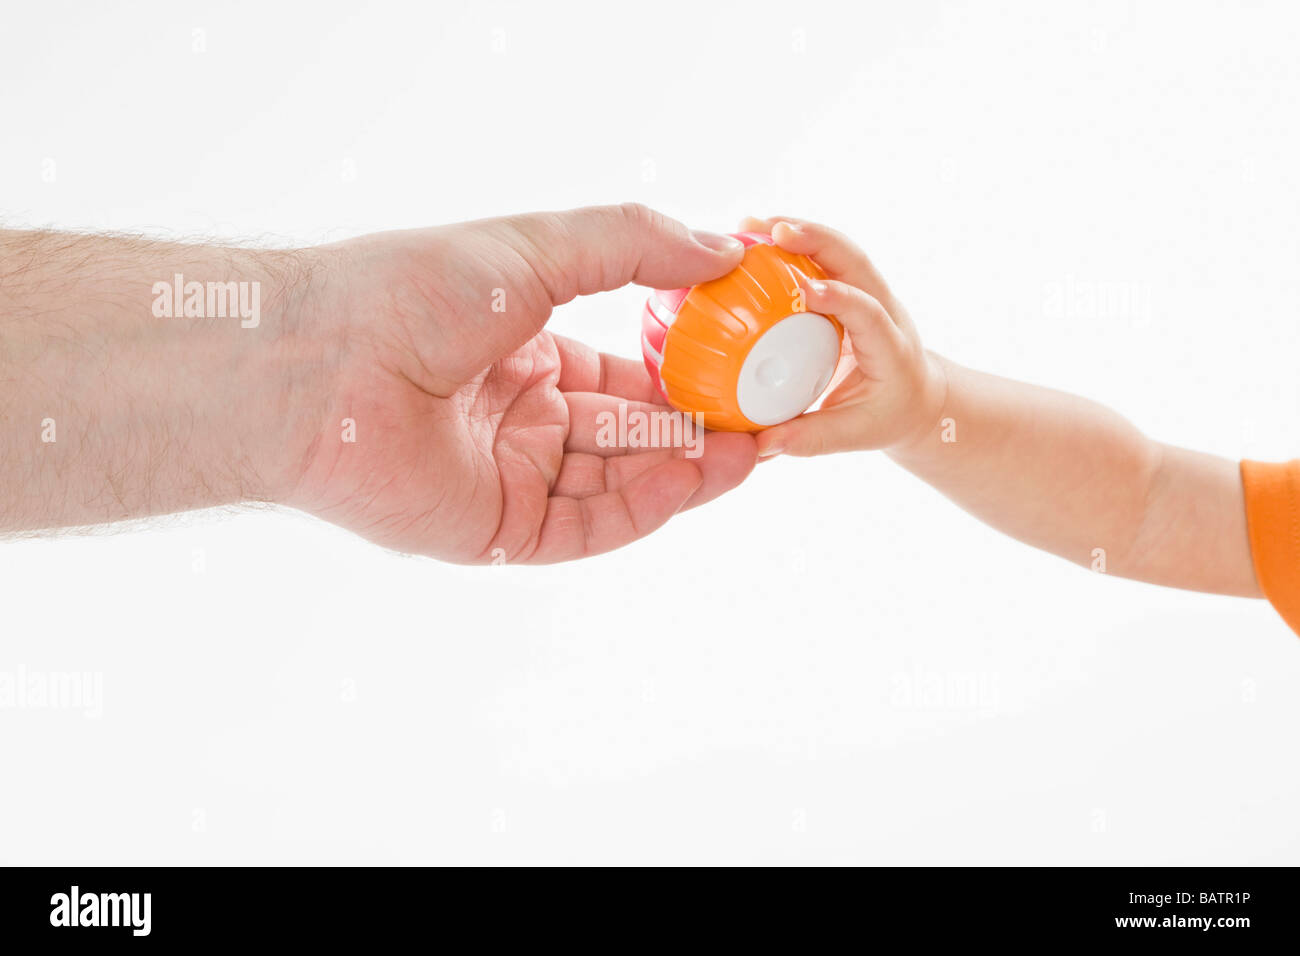 Homme donnant à boule pour un bébé, close-up view Banque D'Images